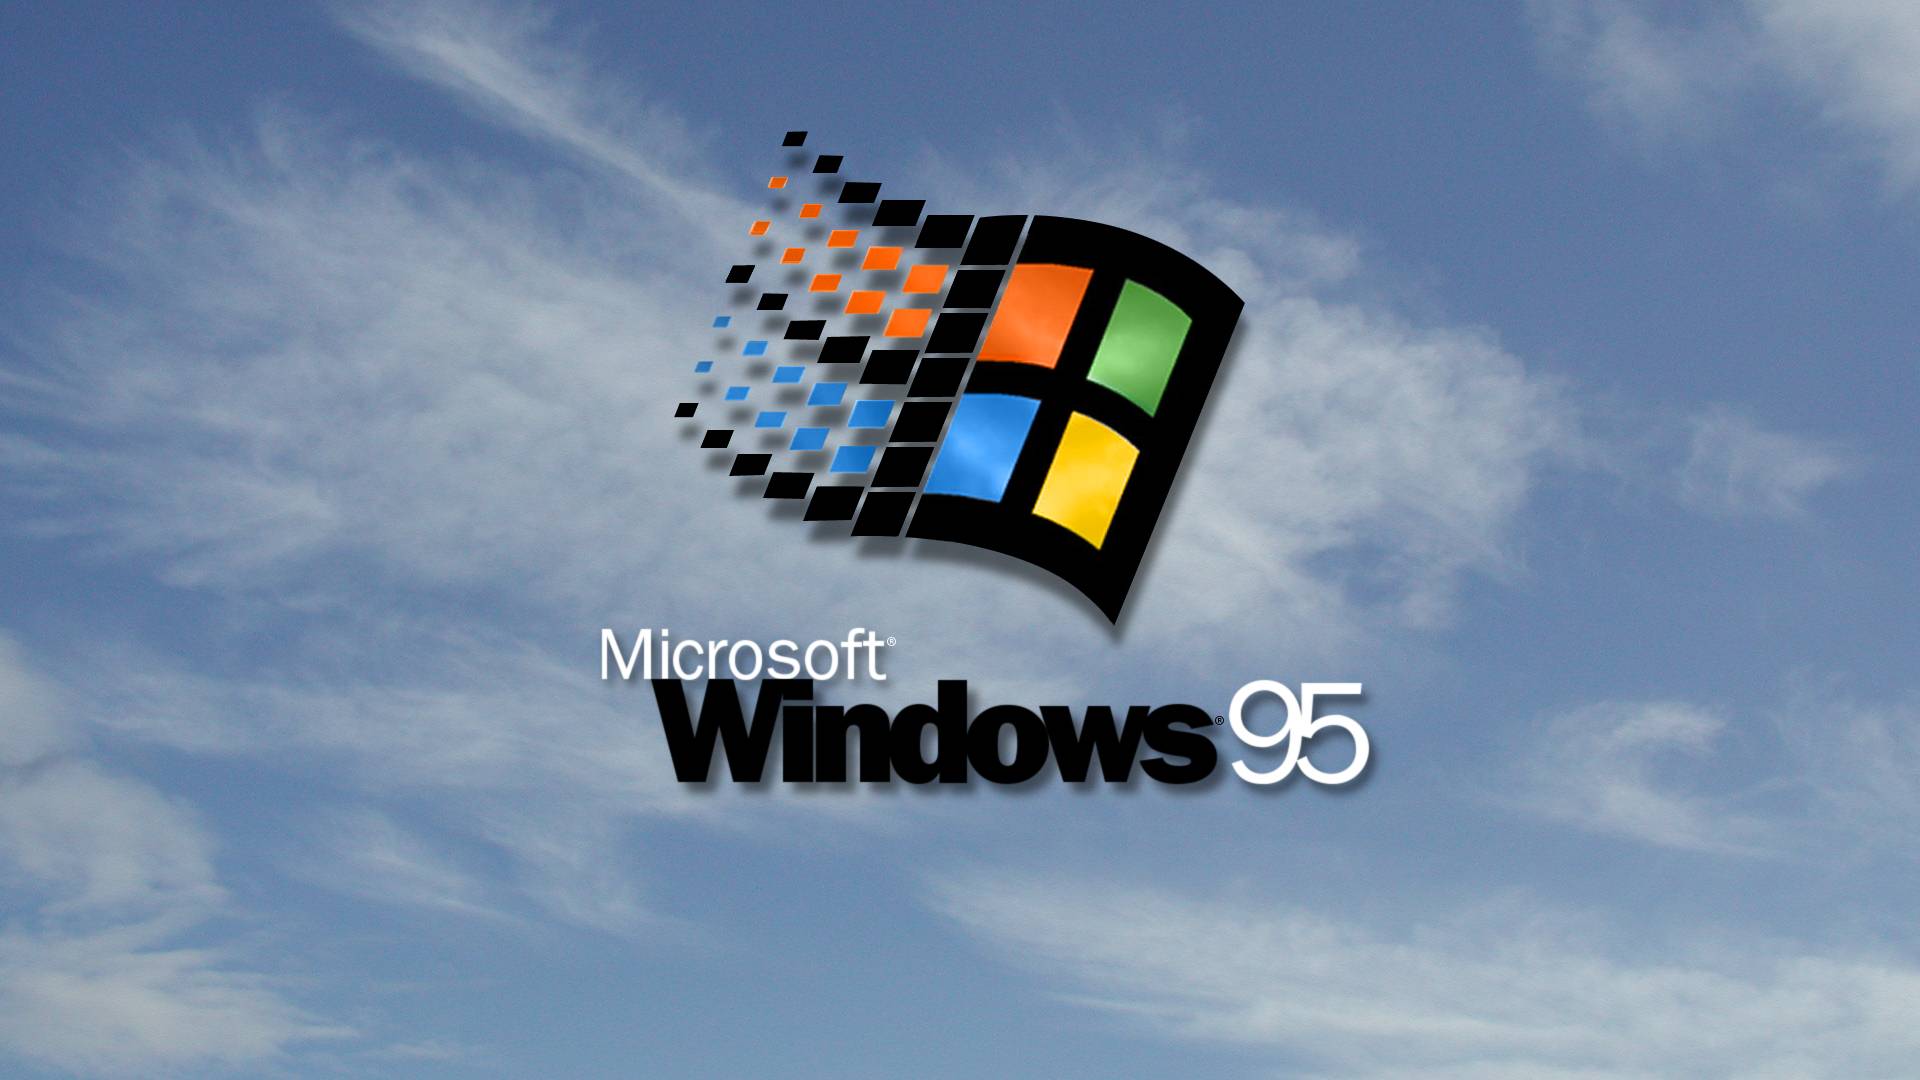 Nếu bạn muốn có trải nghiệm làm việc trở nên thú vị hơn, hãy truy cập trang Wallpaper Cave để tải bức hình nền Windows 95 HD đẹp mắt. Bức ảnh sắc nét và chất lượng cao sẽ chắc chắn làm bạn hài lòng.